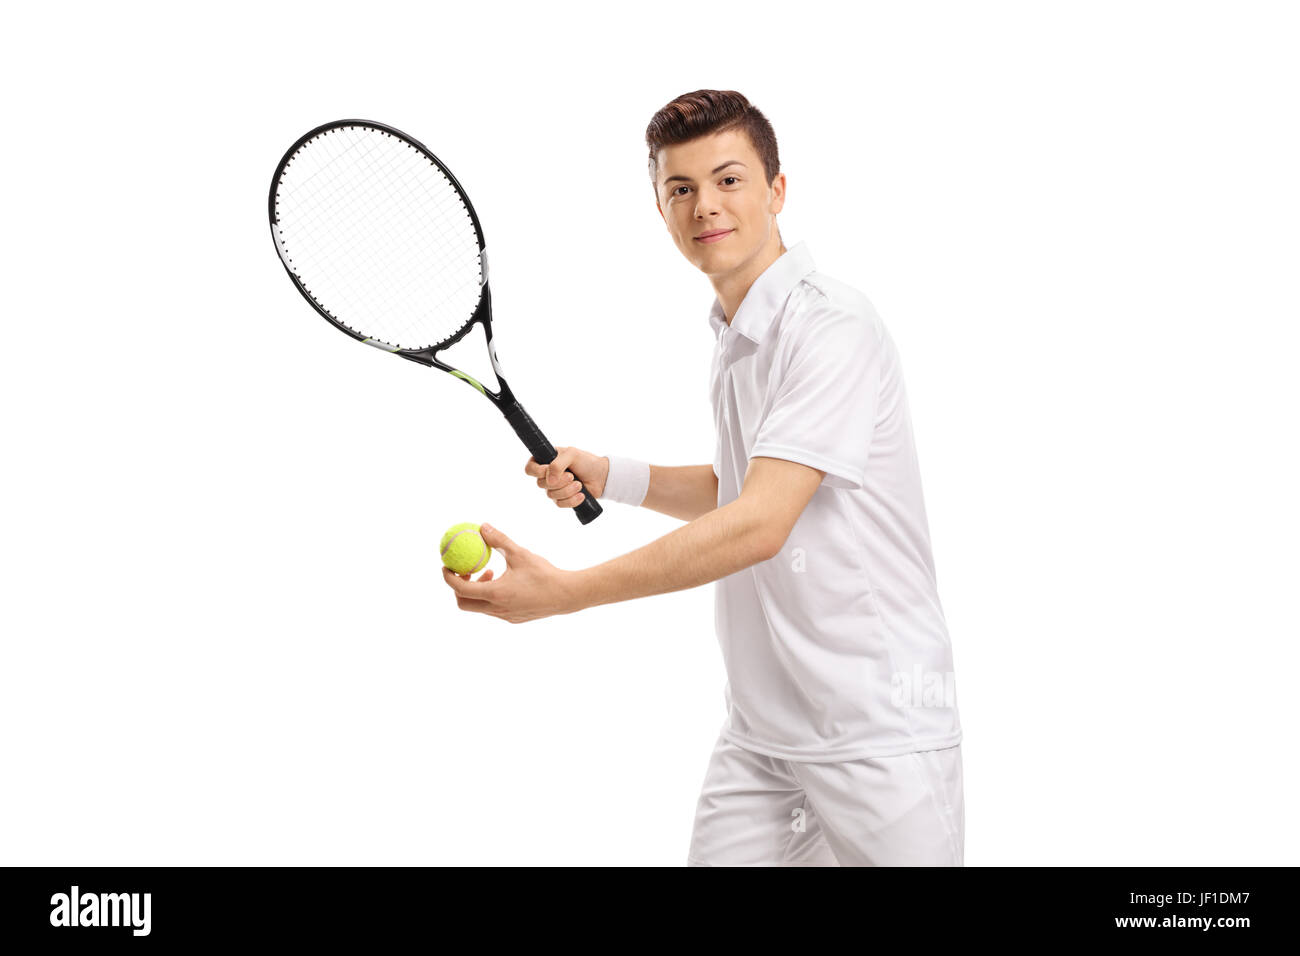 Teenage giocatore di tennis preparando a servire isolati su sfondo bianco Foto Stock